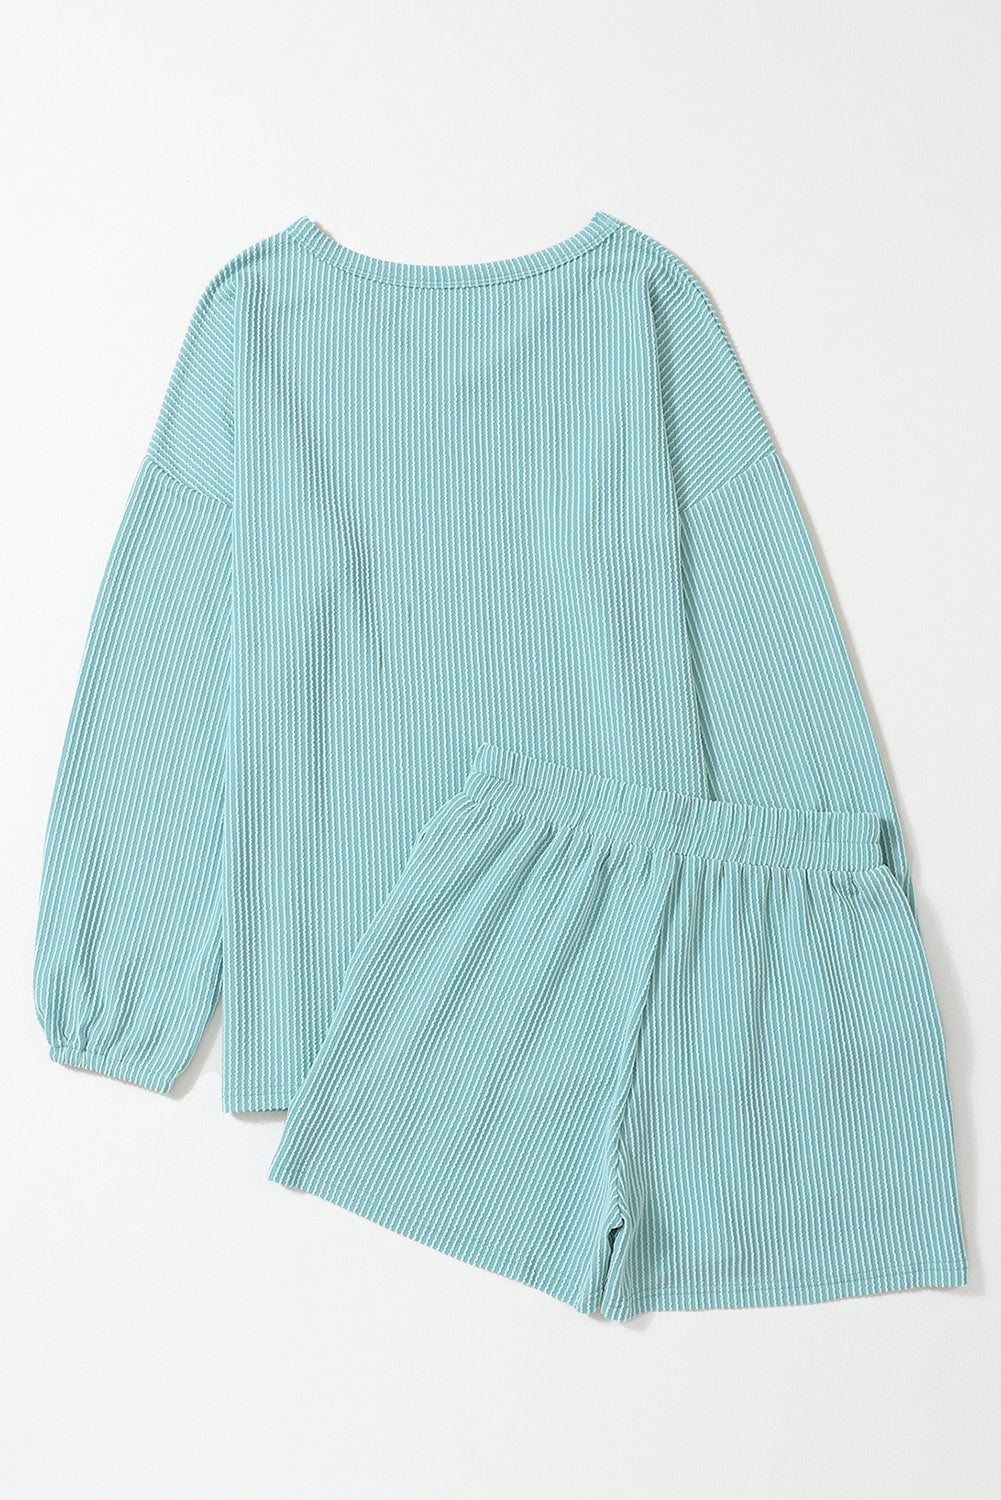 Nebelblaues Cord-Shorts-Set mit V-Ausschnitt, lockerem Oberteil und Taschen